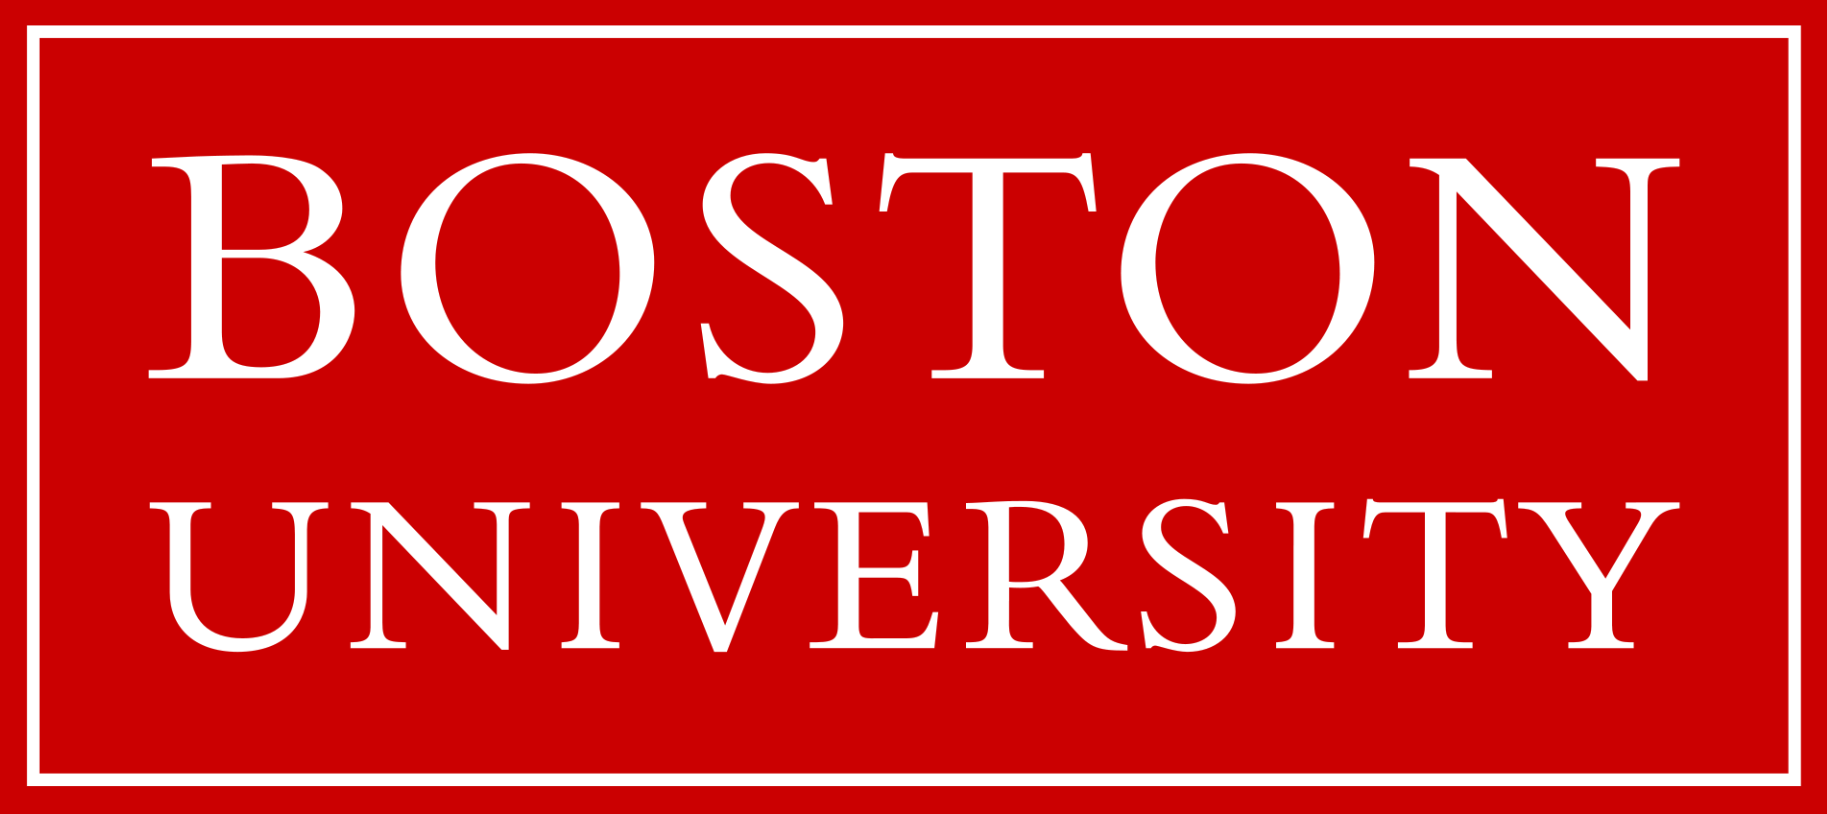 جامعة بوستن (boston university) (مواقع التواصل)